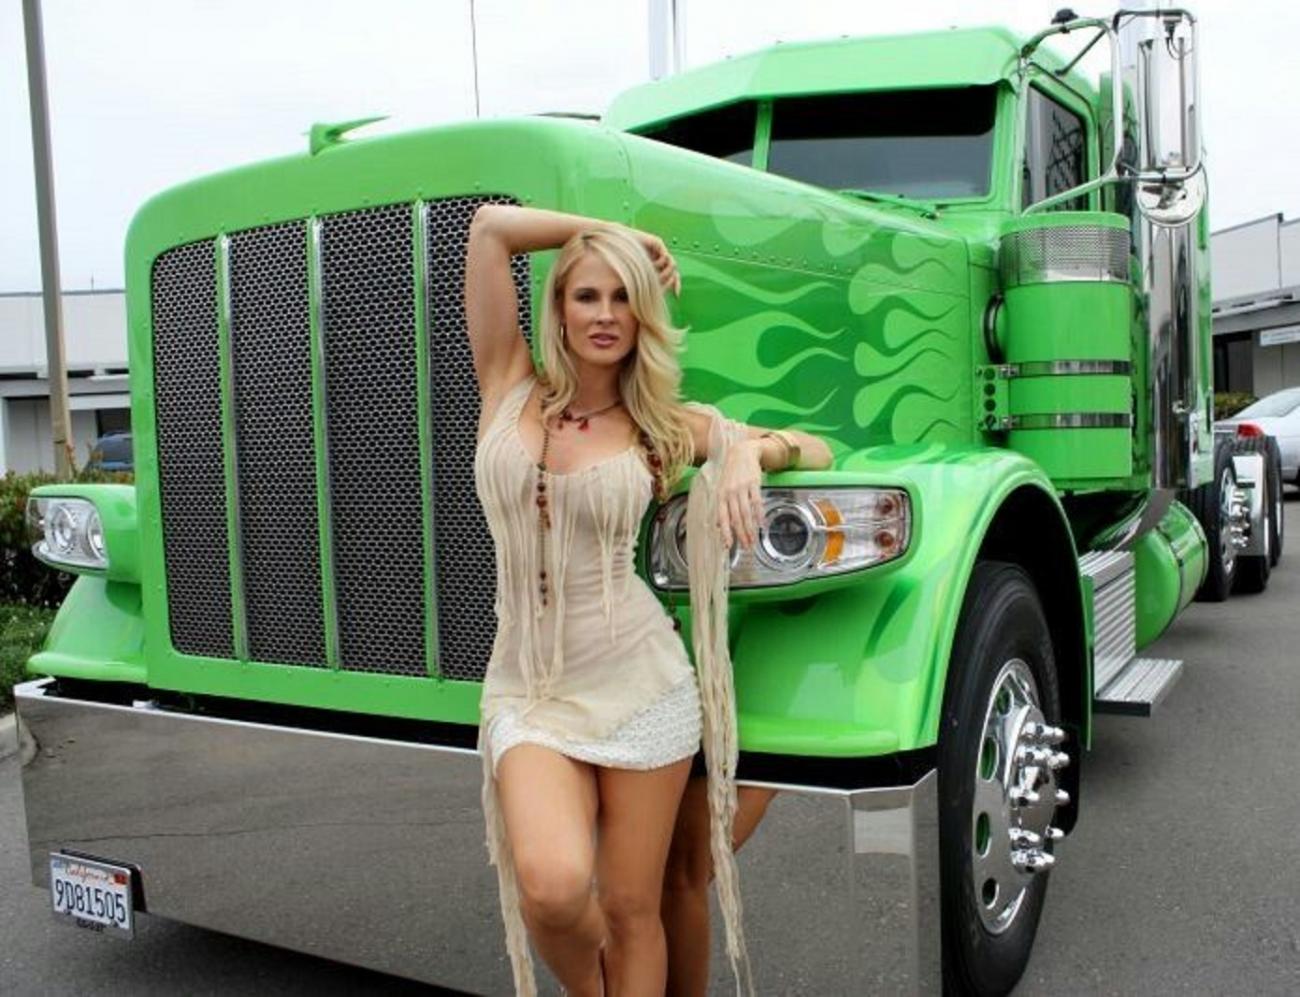 Trucks & Girls 